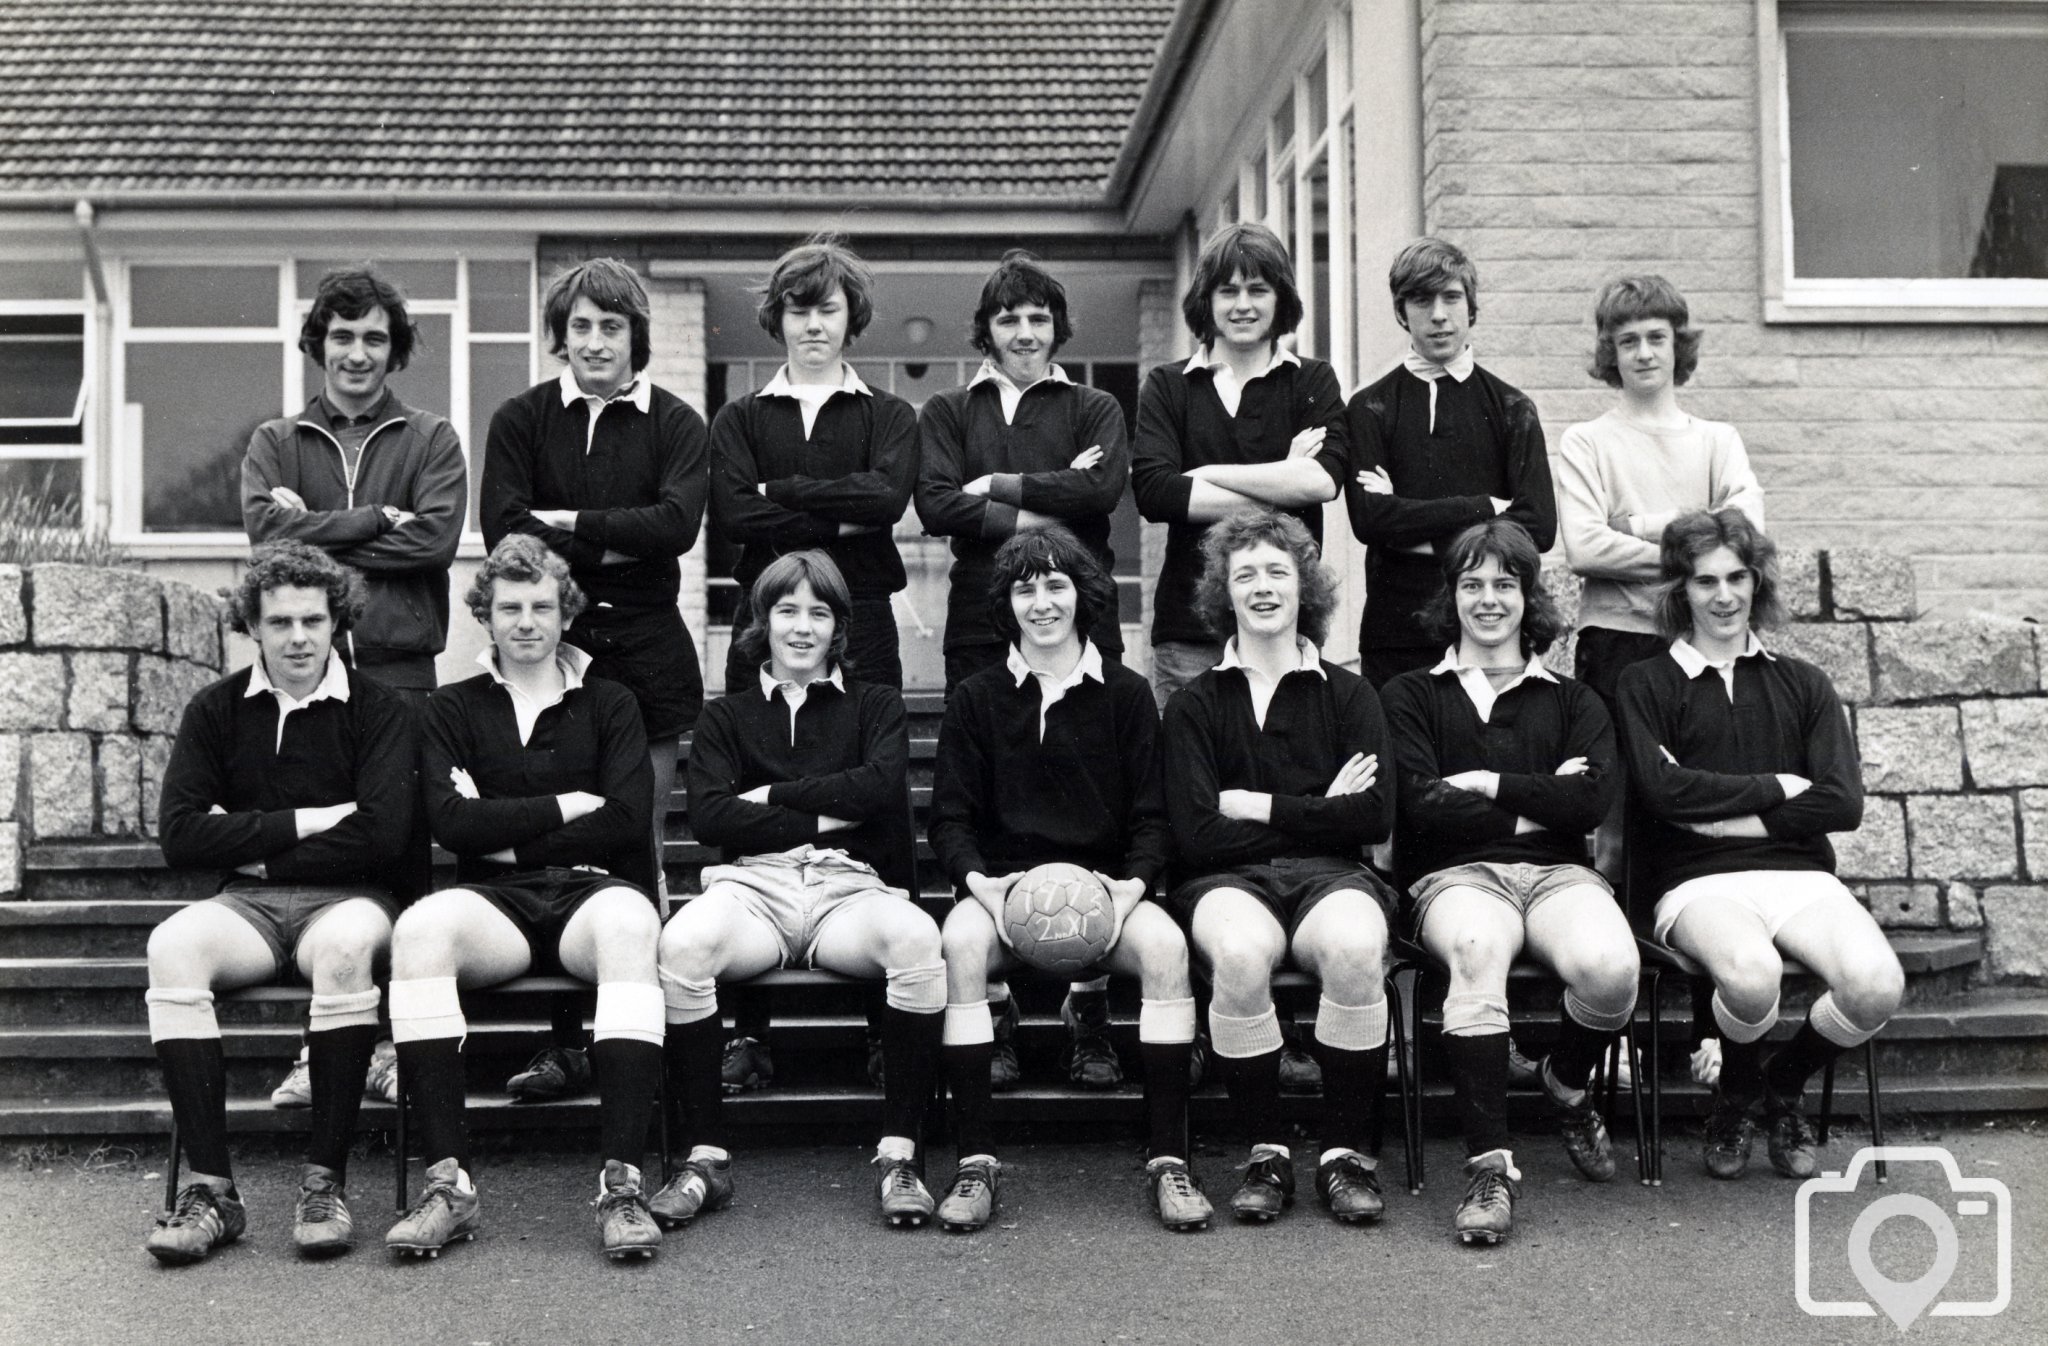 Football 2nd Team 1973